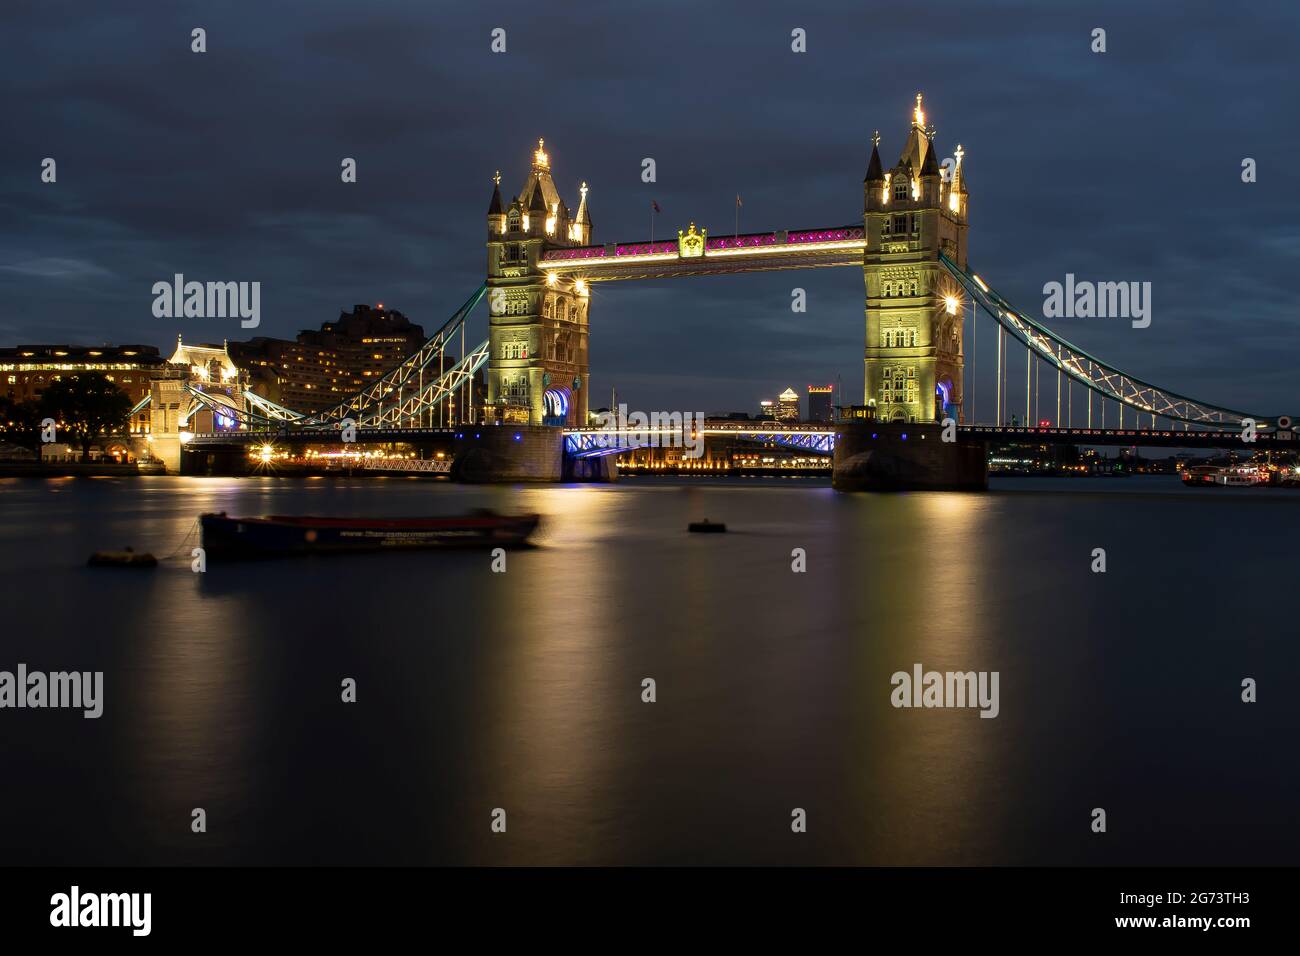 Tower Bridge dans la ville de Londres illuminé en soirée. Les lumières se reflètent sur l'eau de la Tamise. Londres, Angleterre. Banque D'Images